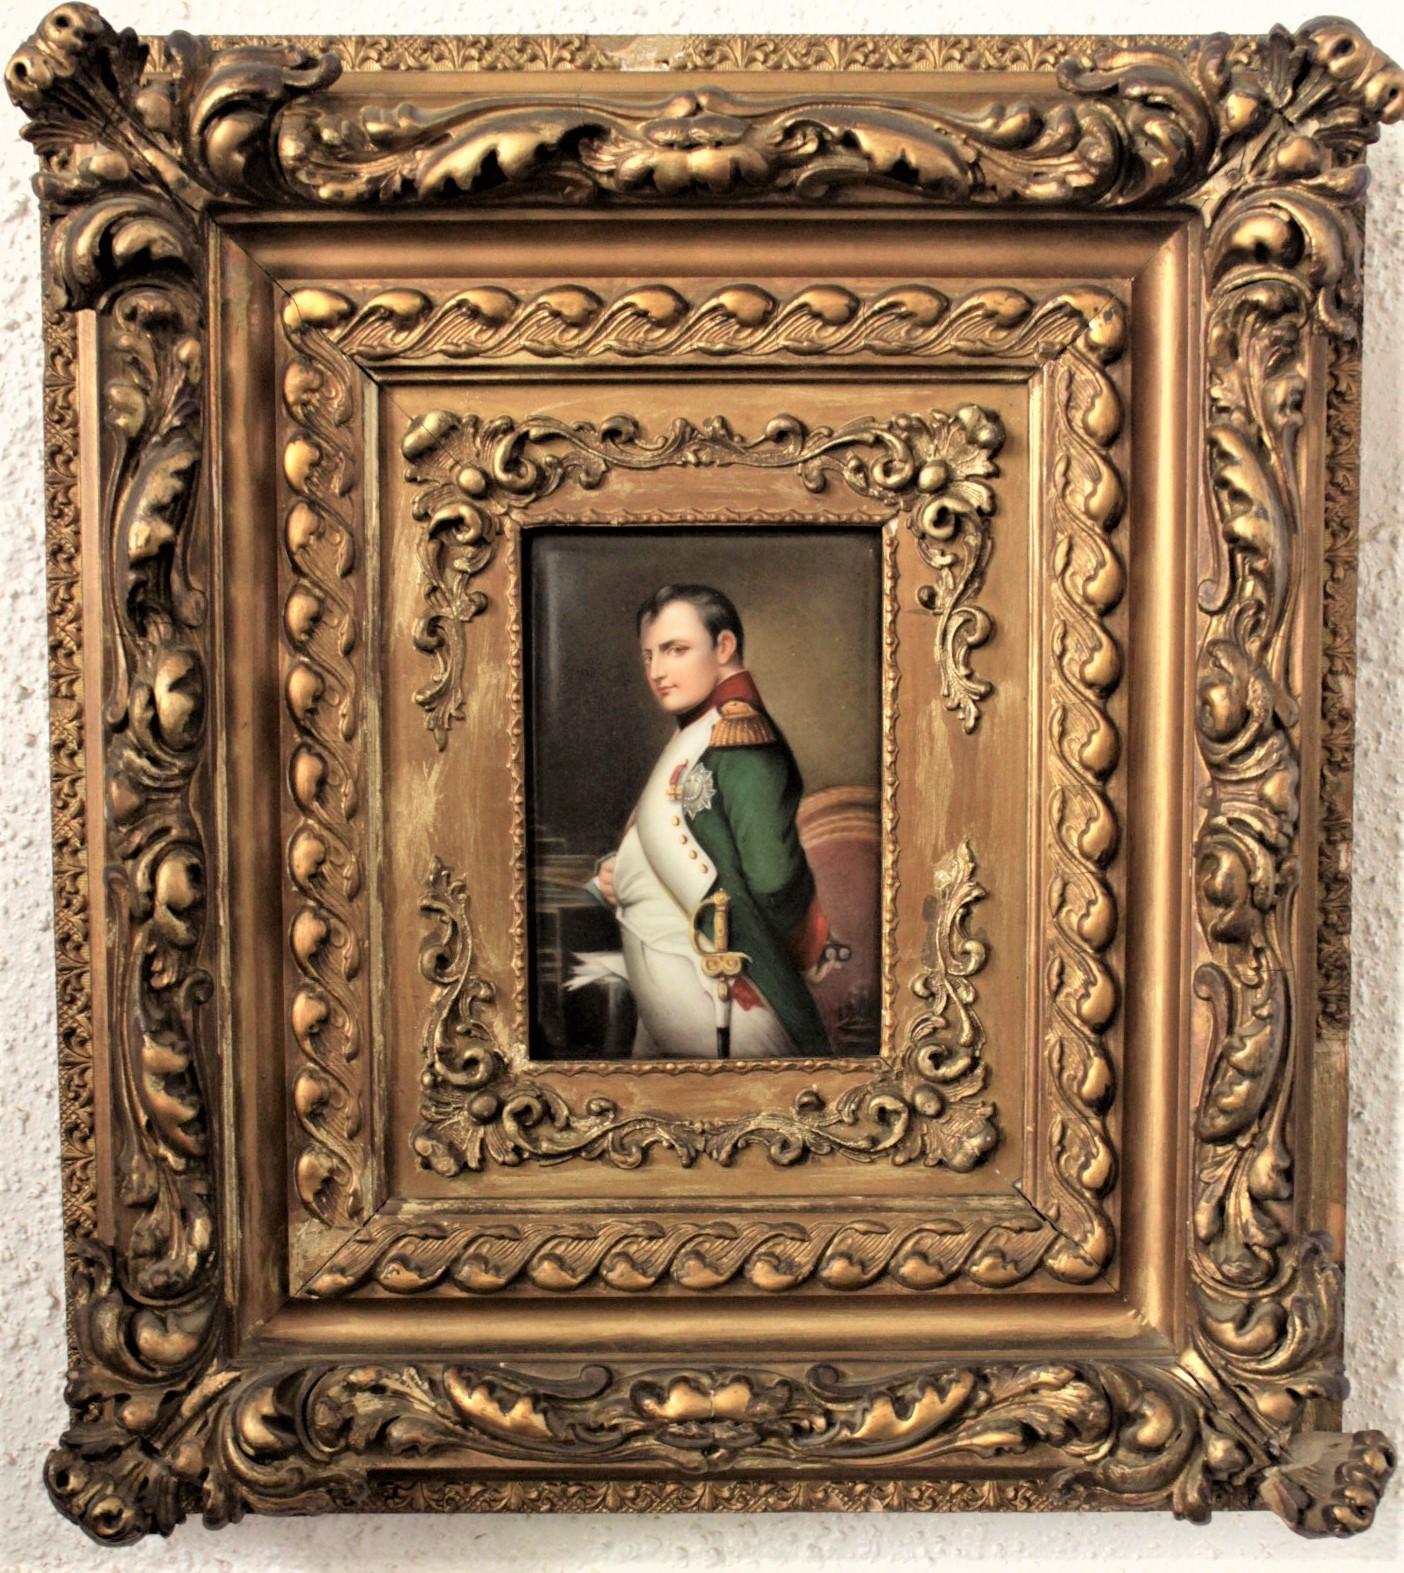 Diese gut ausgeführte, handbemalte Porzellantafel ist unsigniert, wurde aber vermutlich um 1850 in Frankreich im Stil der Renaissance angefertigt. Die Tafel zeigt eine ikonische Darstellung von Napoleon in seiner Uniform. Die Plakette ist in einen